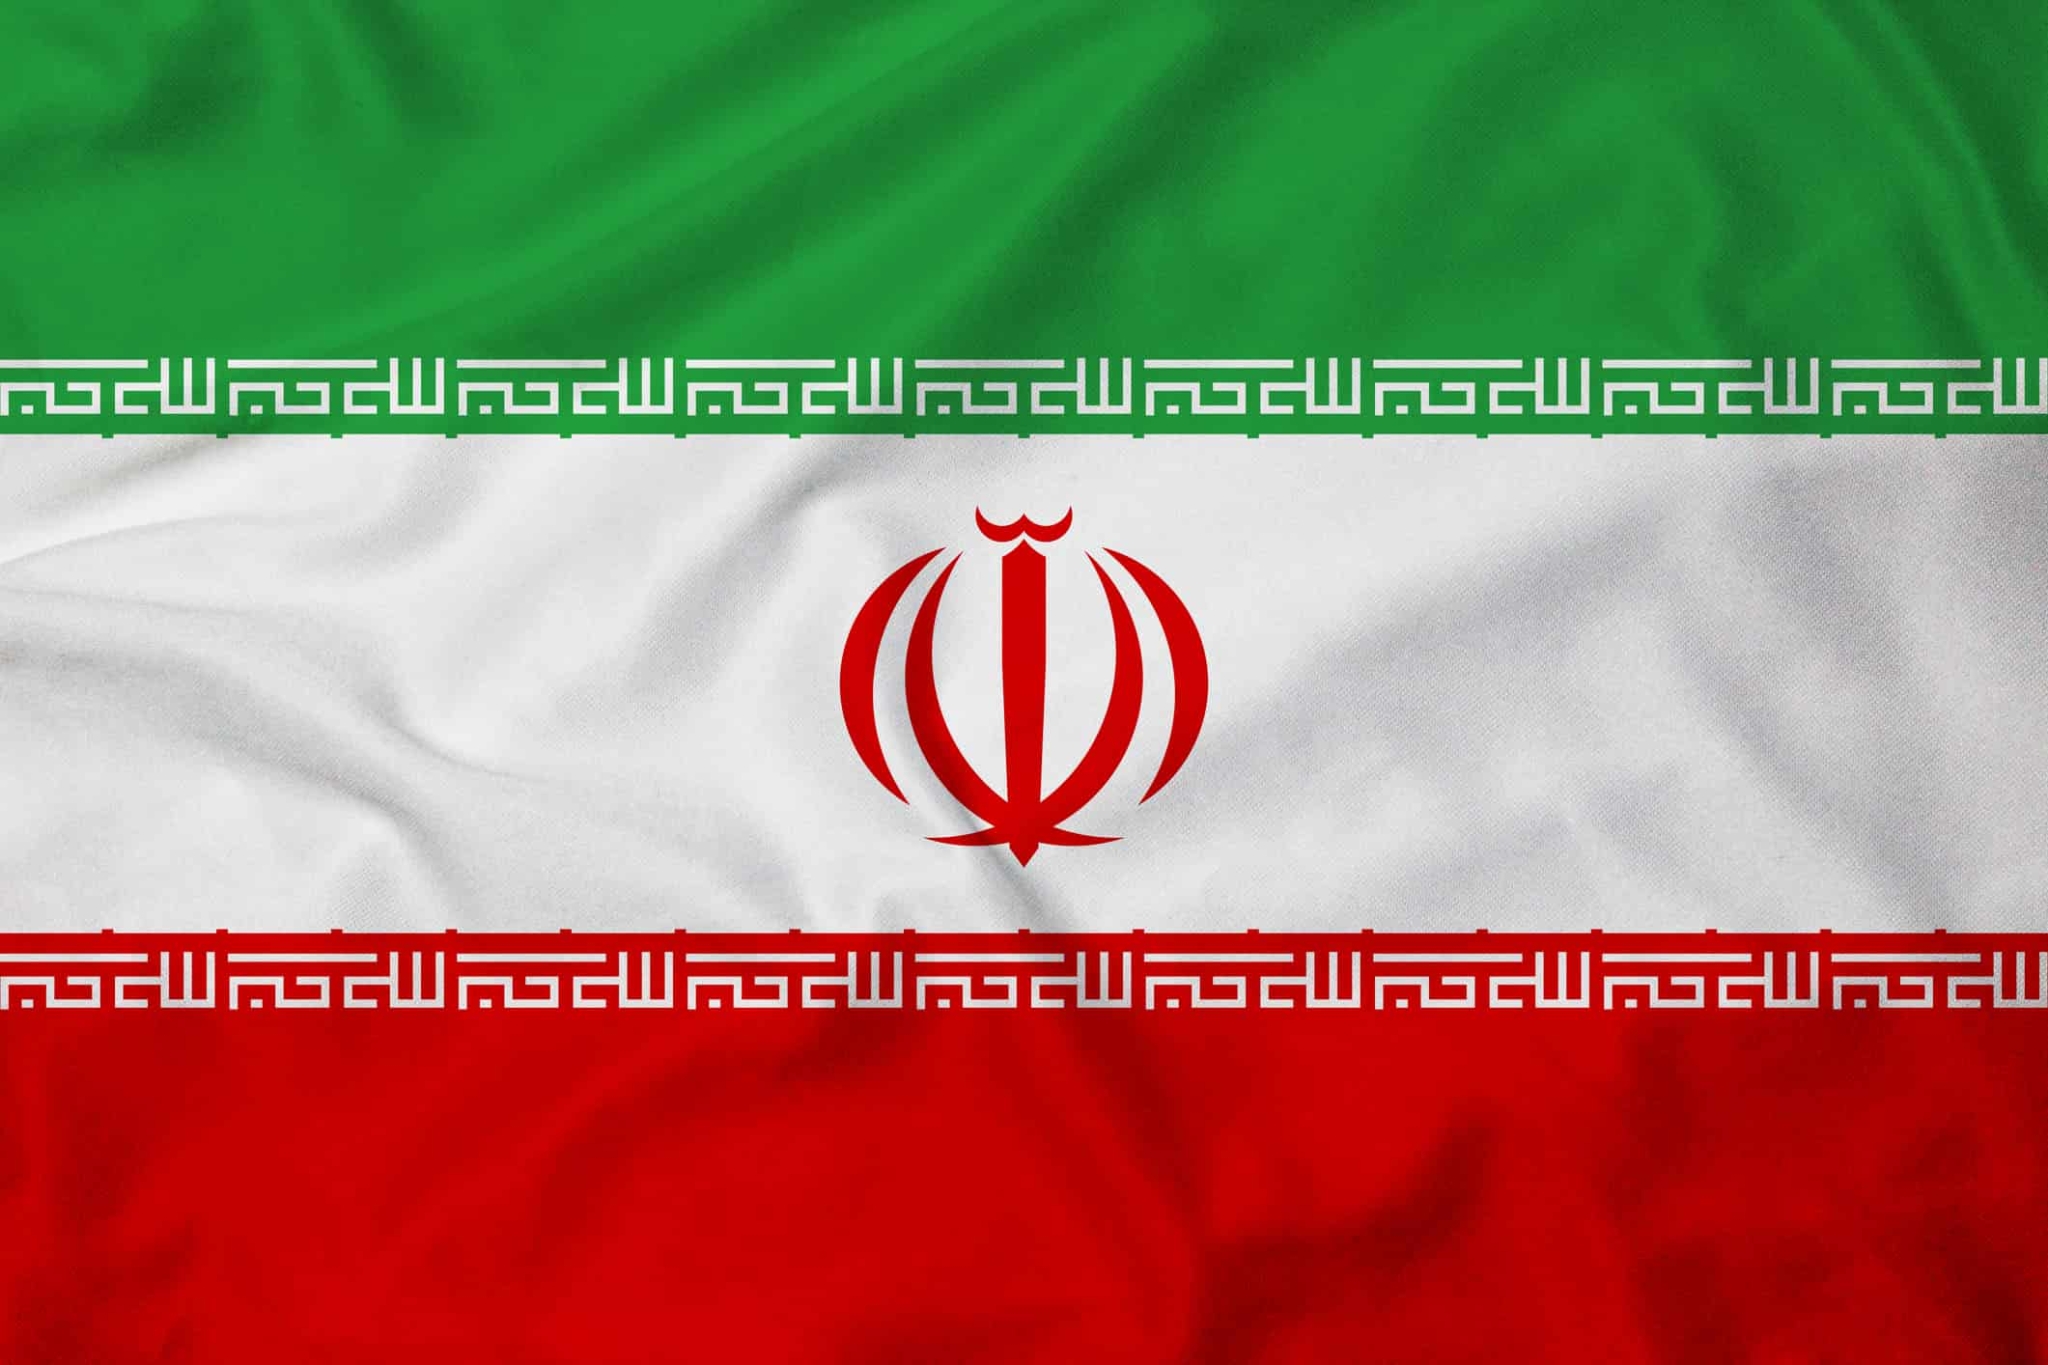 پرچم ایران - پرچم ایران در طول تاریخ - عکس پرچم کشور ایران ...